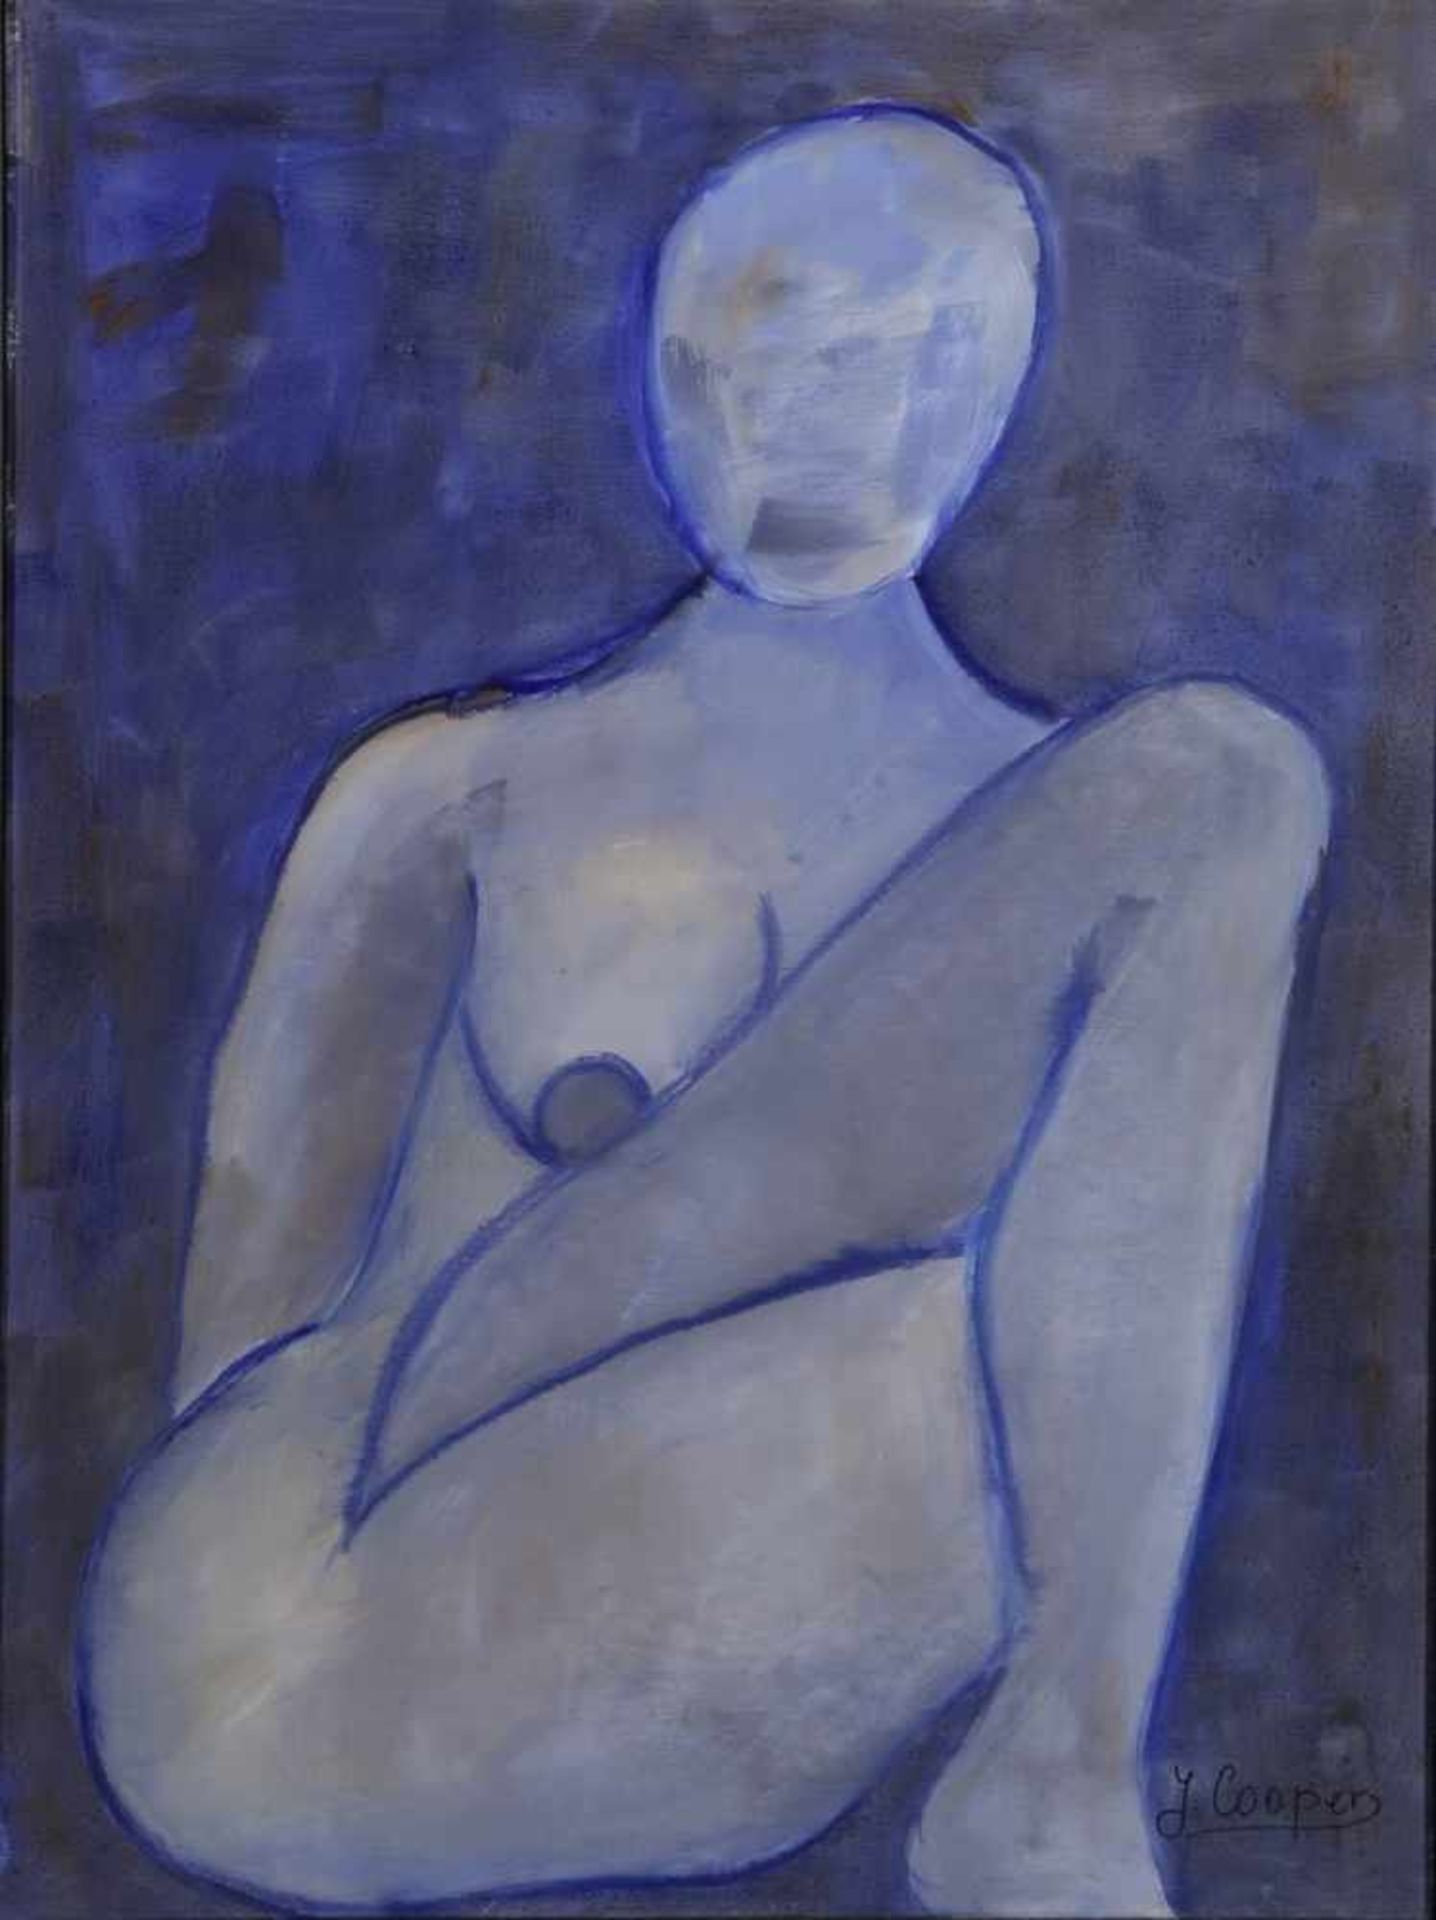 Cooper, J., zeitgenössischer Maler. "Sitzender, weiblicher Akt in Blau", sign., Öl/Lw., 80x 60